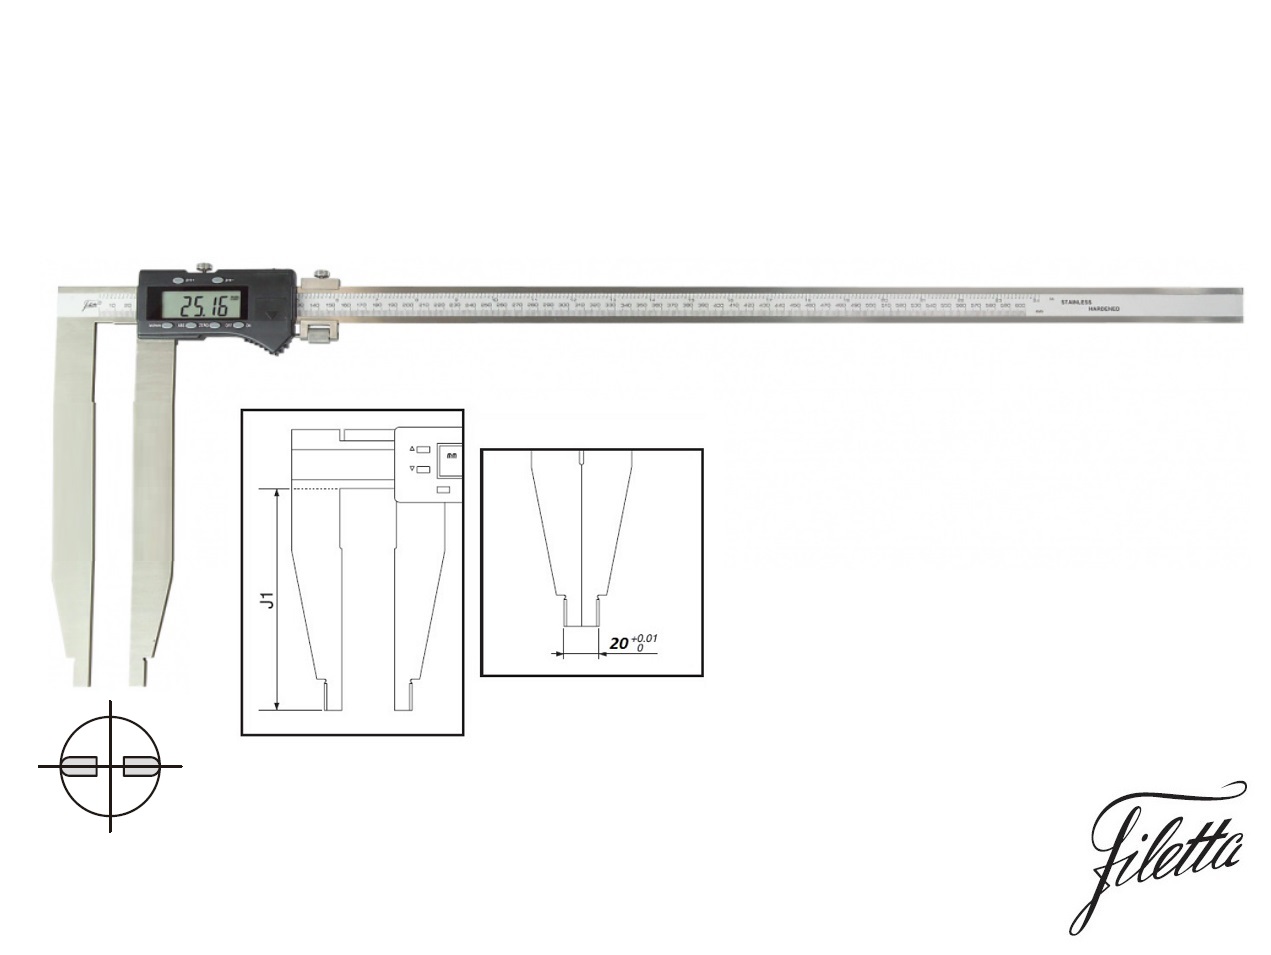 Digitální posuvné měřítko Filetta 0-600 mm  bez nožíků, s měřicími čelistmi 300 mm 